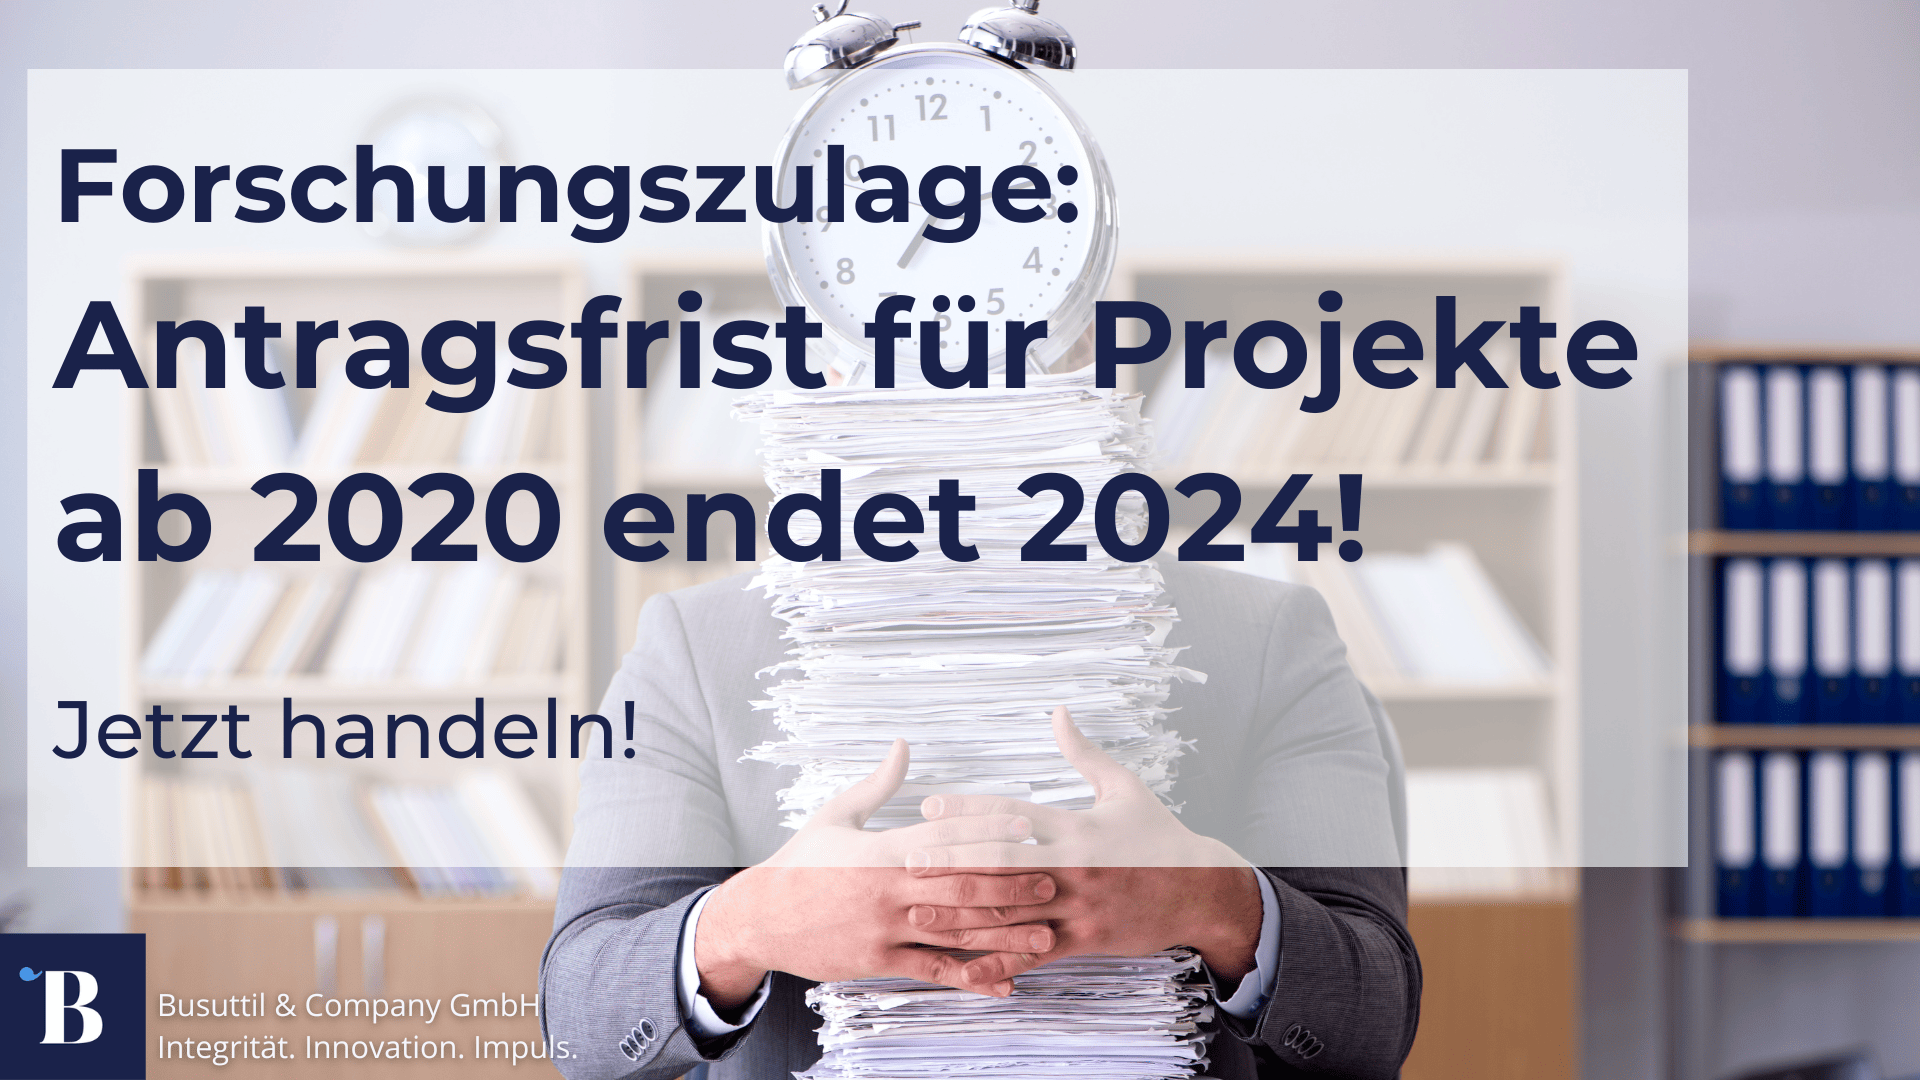 Die Antragsfrist für Forschungsprojekte, die ab dem 1. Januar 2020 gestartet wurden, laufen zum Ende des Jahres 2024 aus.